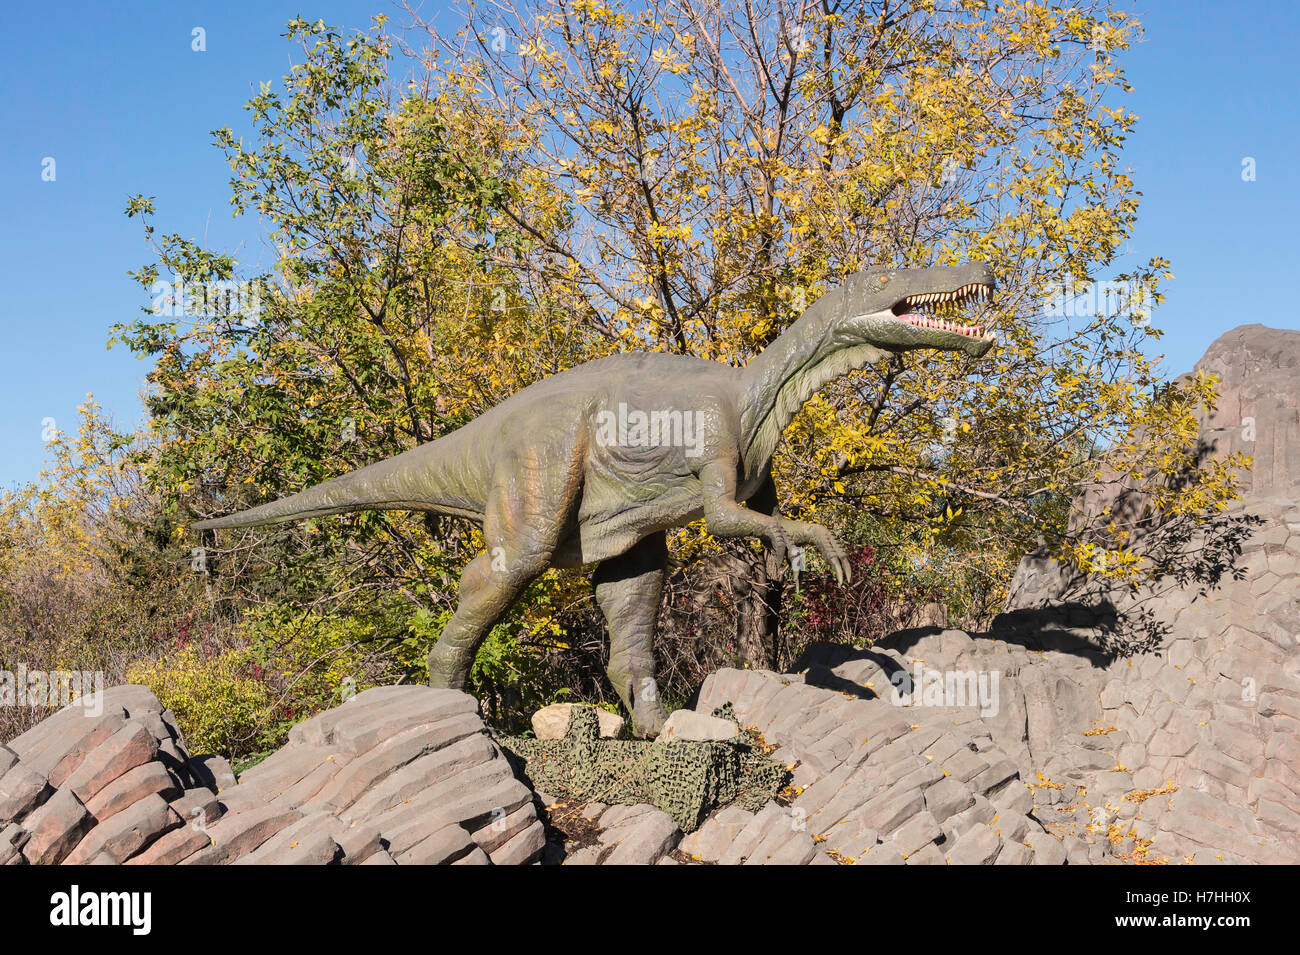 Baryonyx, theropod dinosaur, reconstruction/model Stock Photo